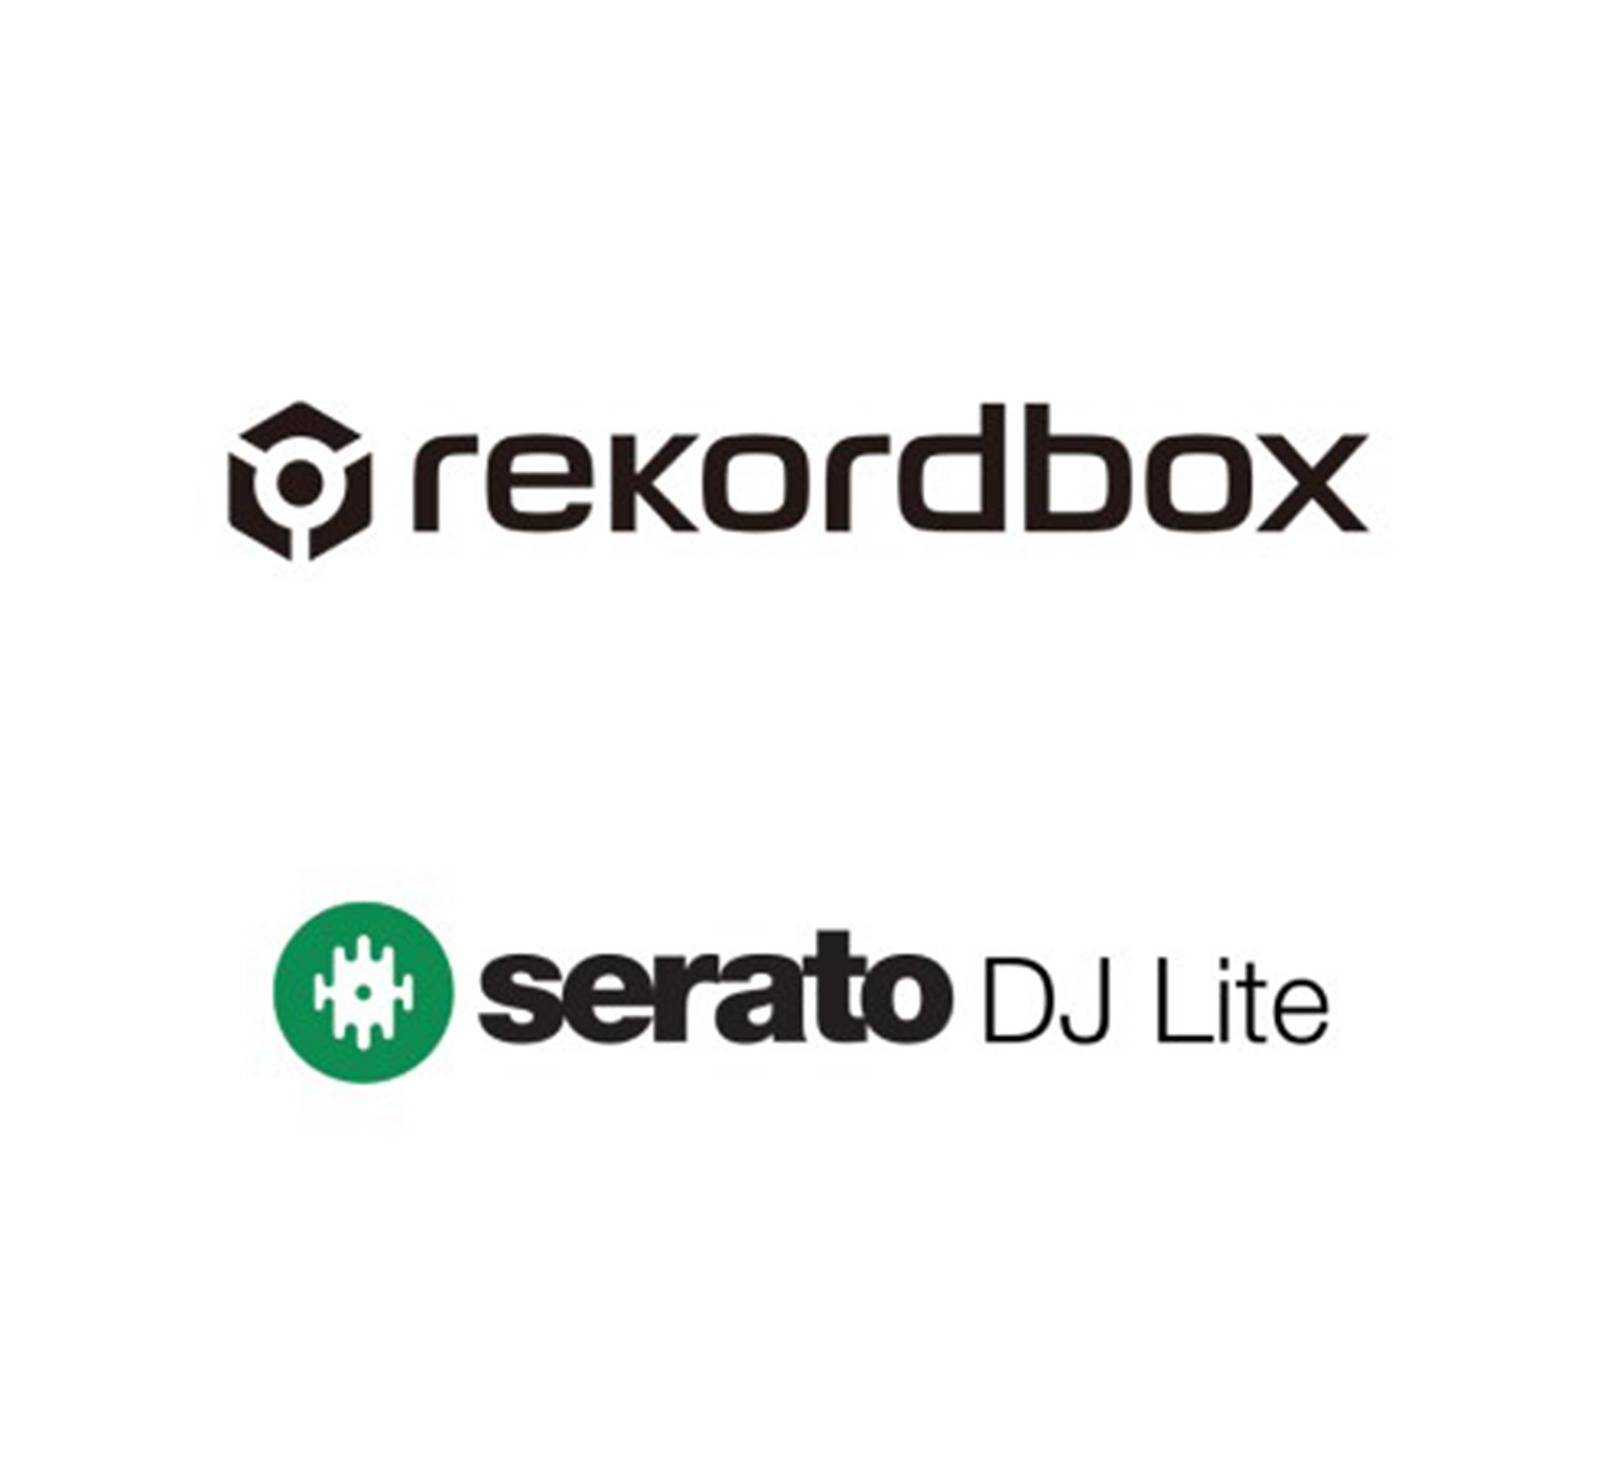 Rekordbox and Serato compatibility